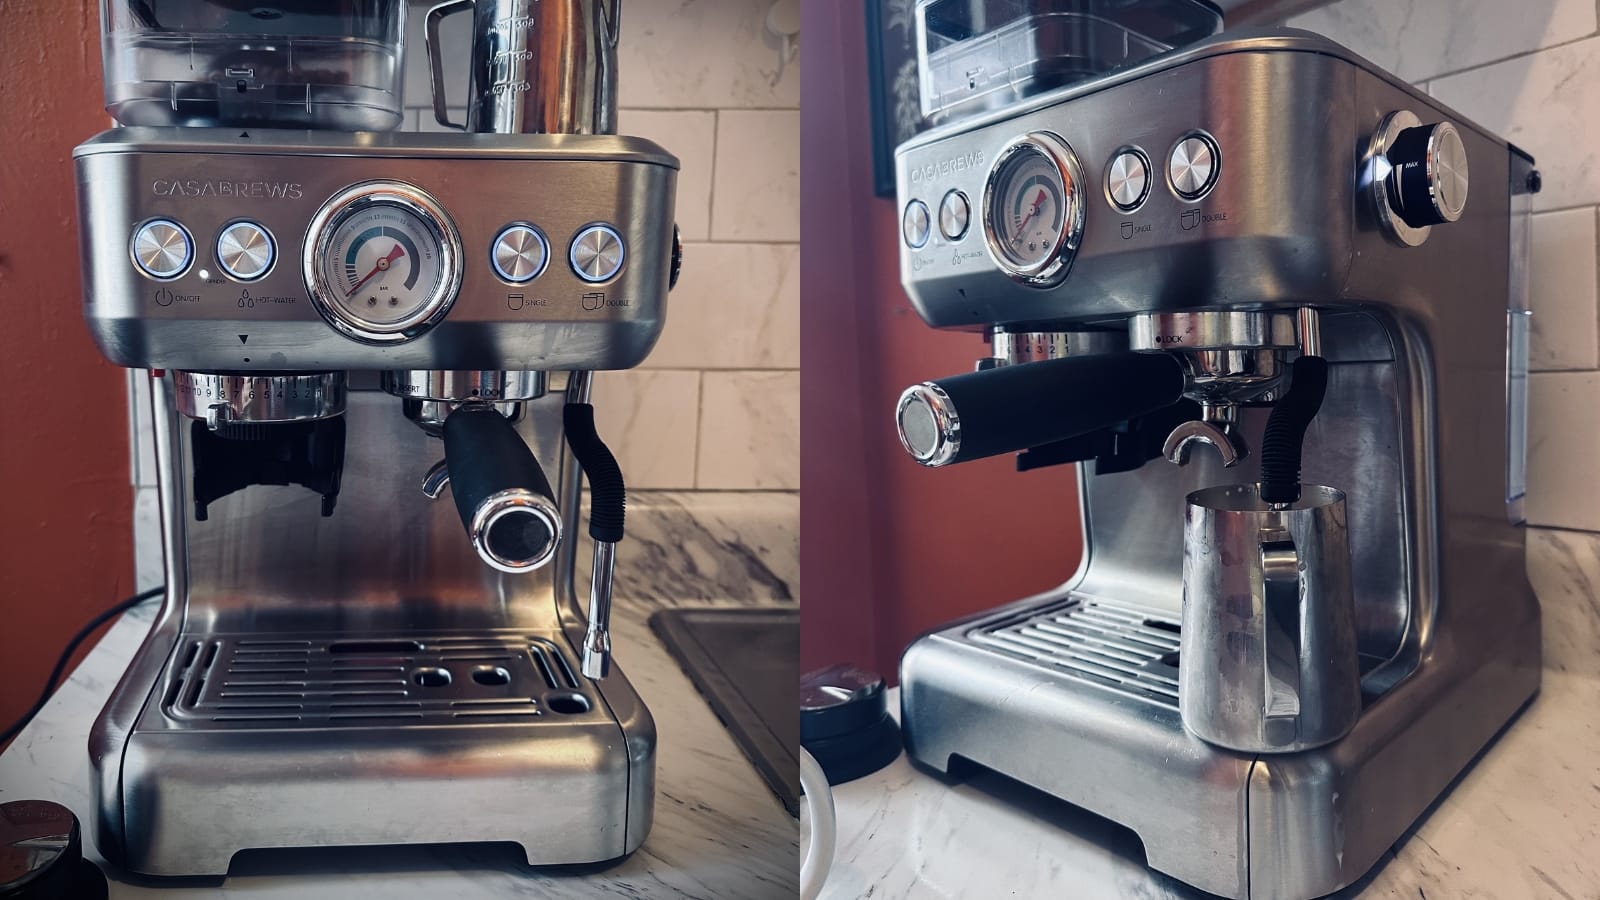 Casabrews Espresso Machine Review